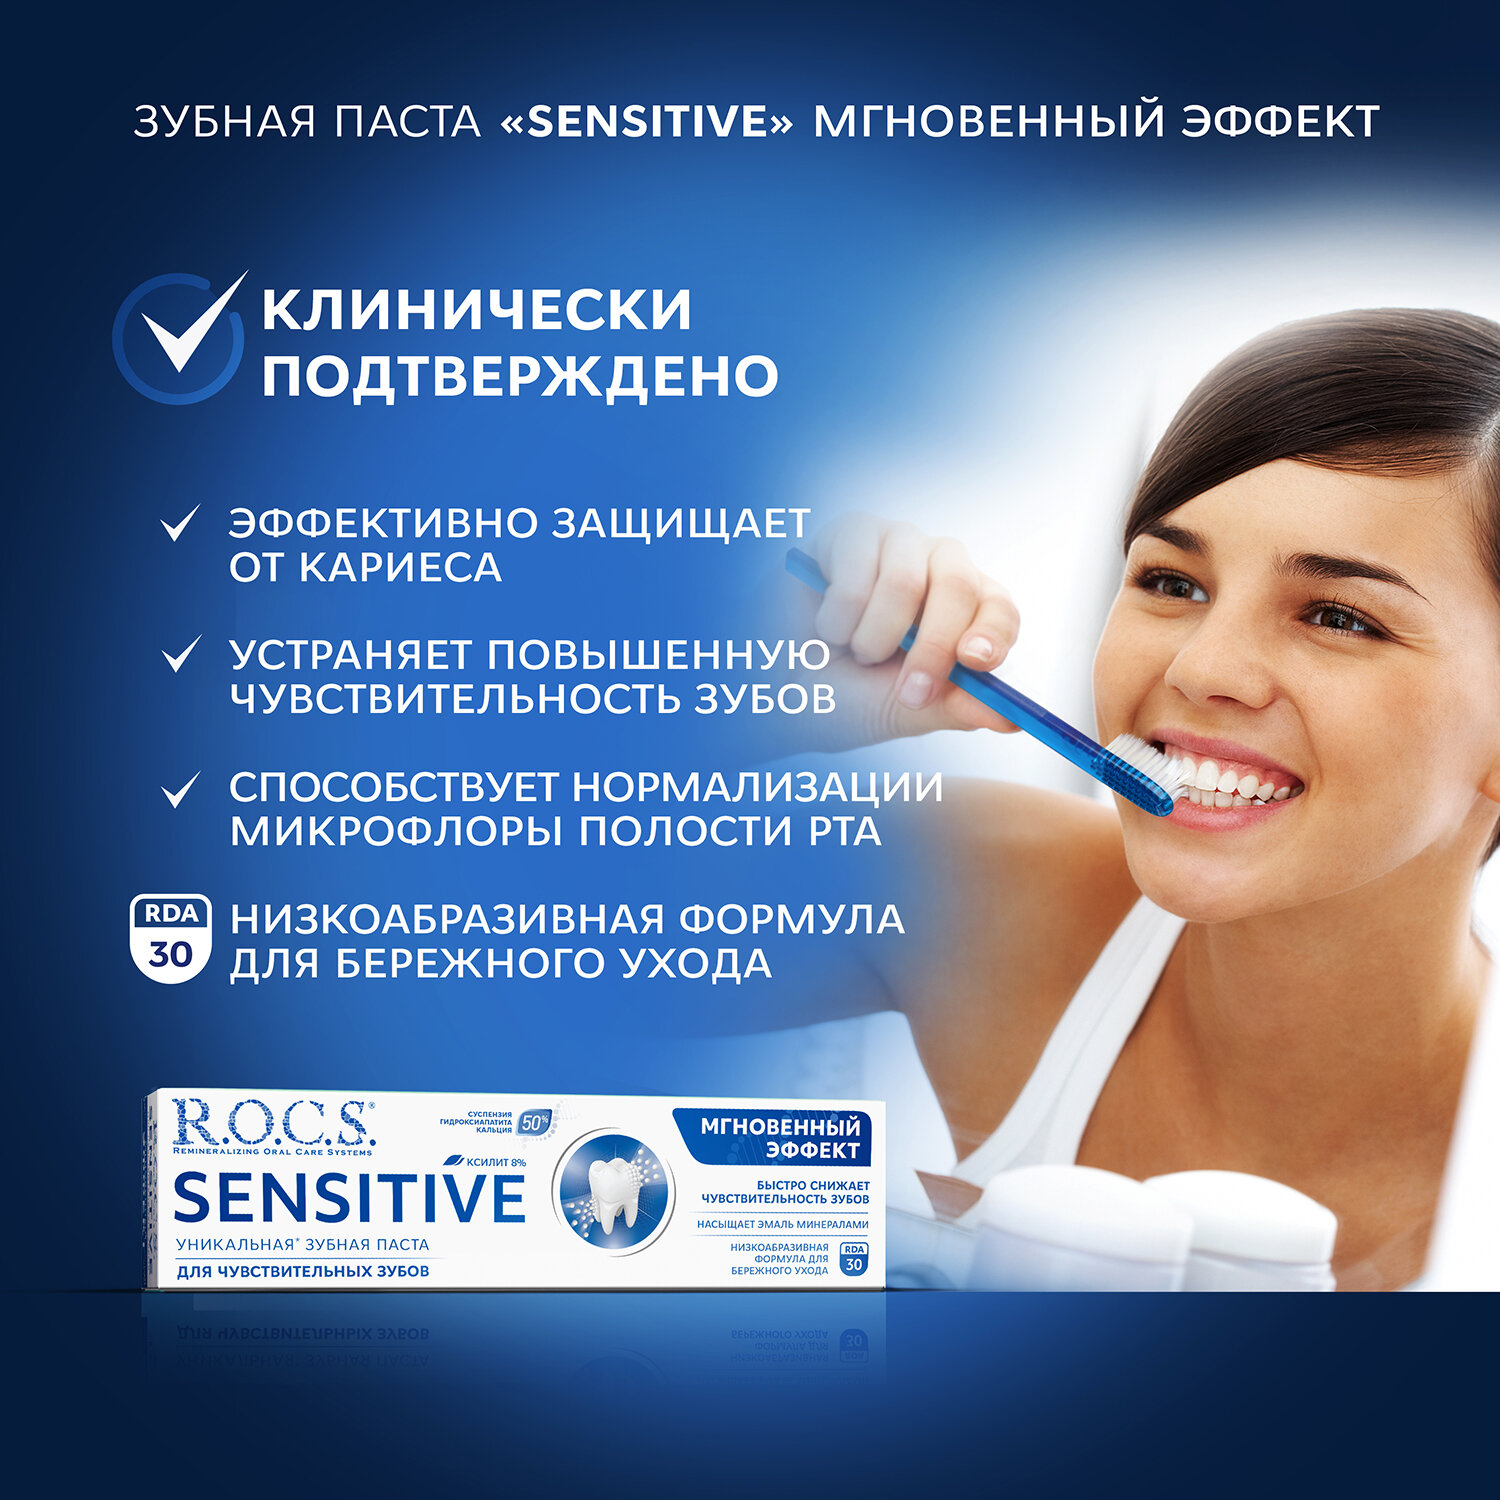 Зубная паста R.O.C.S. Sensitive Мгновенный эффект, 94 г - фото №5